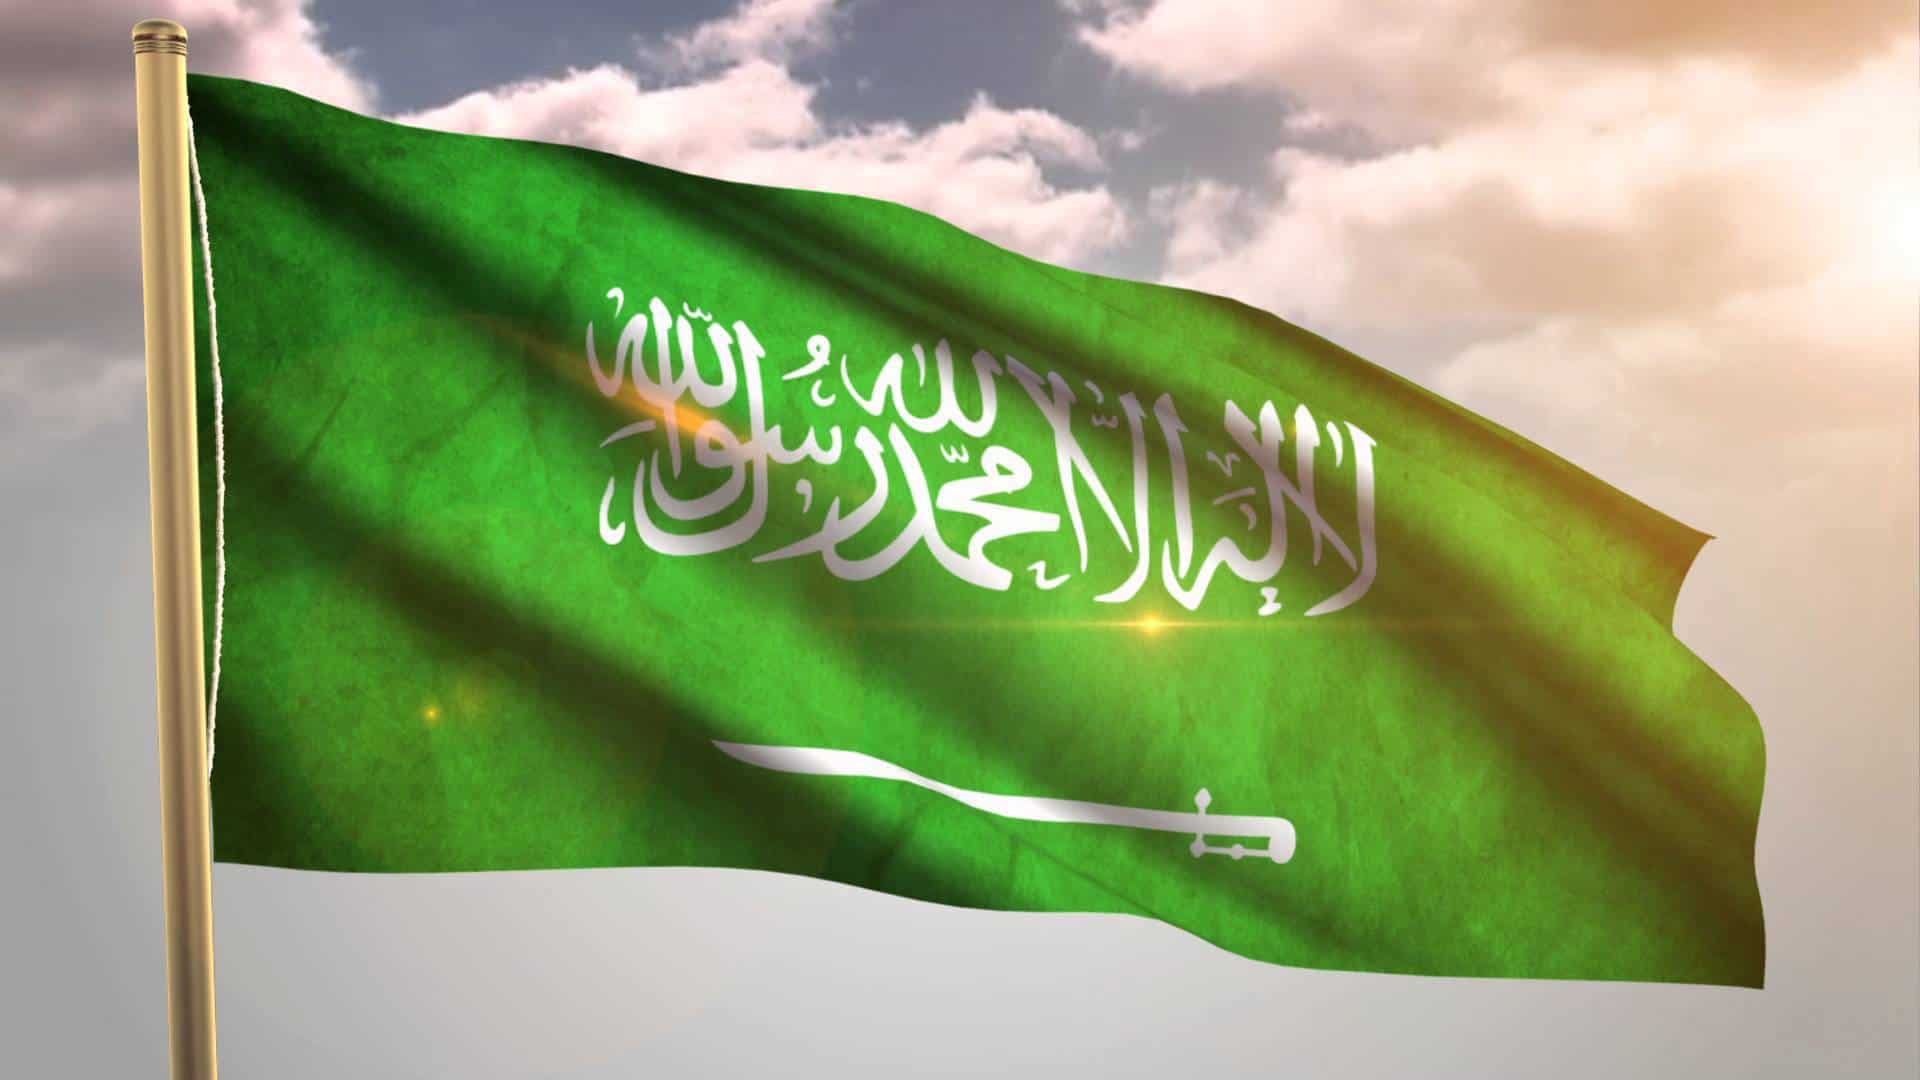   السعودية تؤكد دعمها لجهود الأمم المتحدة ومبعوثها الخاص لحل الأزمة السورية